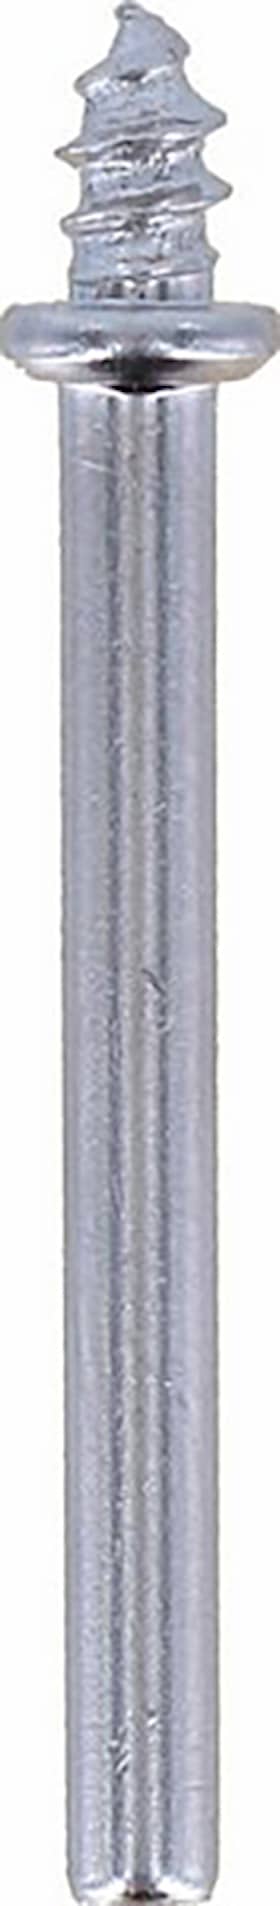 Dremel Spindel 401JA 3,2mm 3st